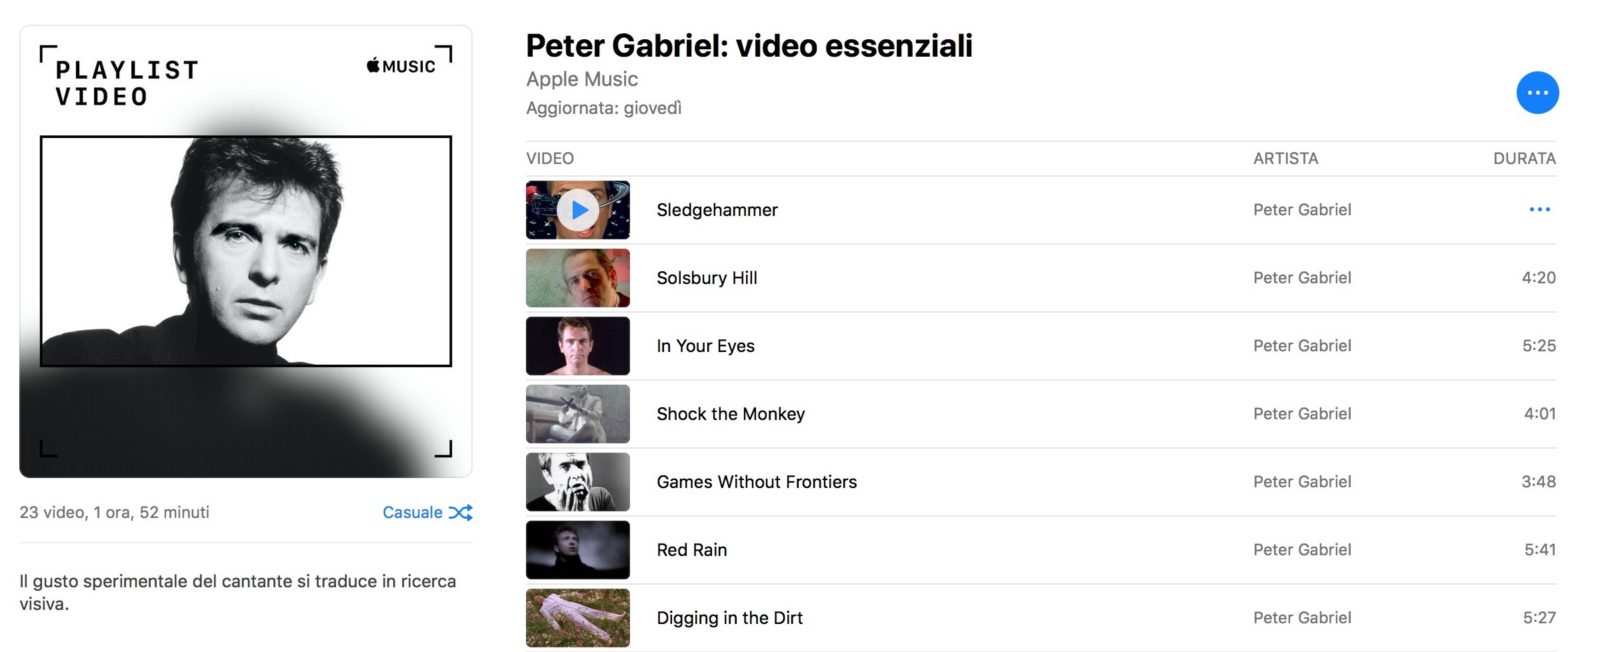 Il video Sledgehammer di Peter Gabriel rimasterizzato in 4K su Apple Music